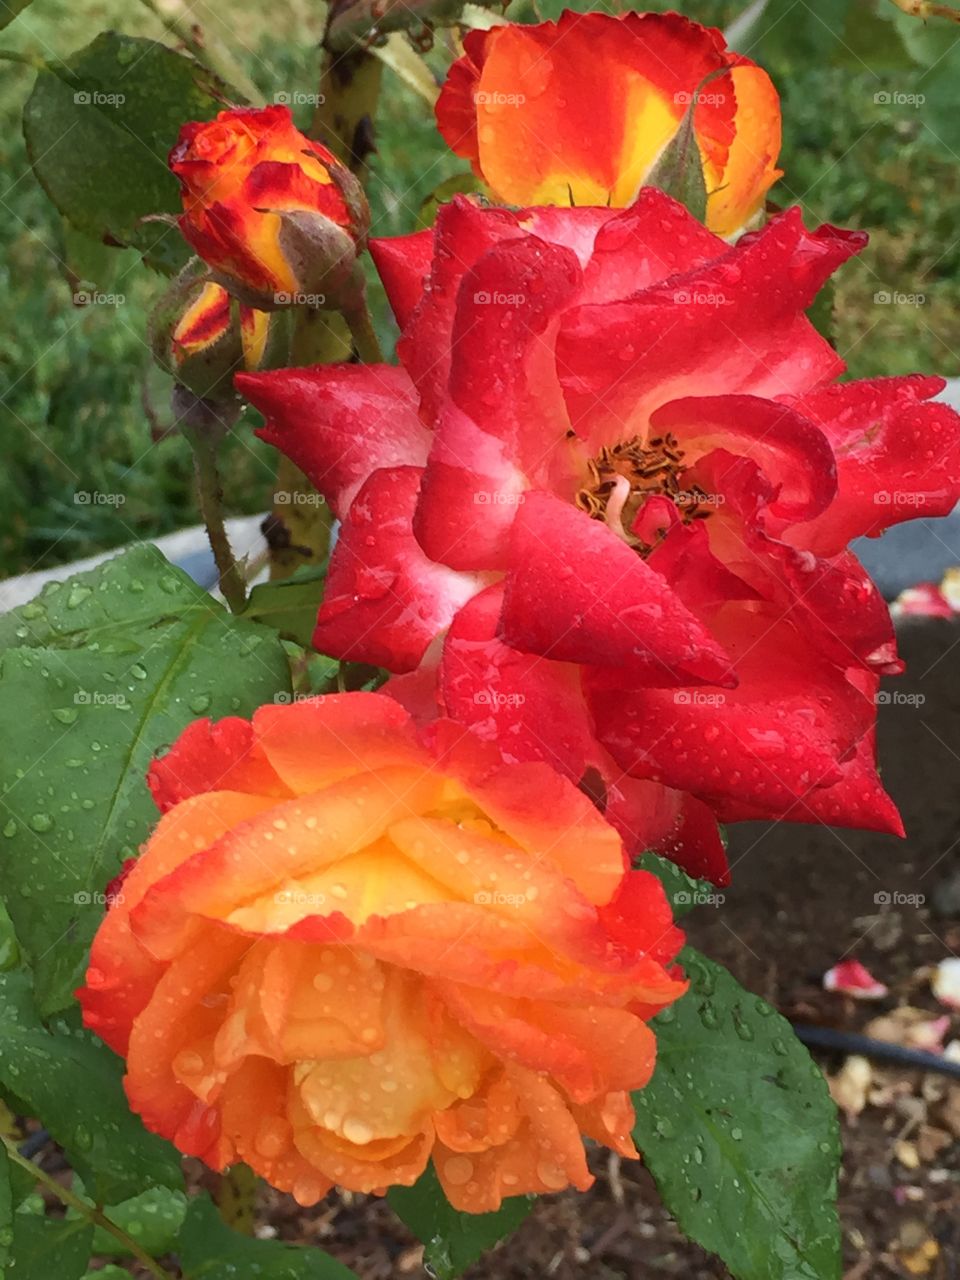 Sunburst rose